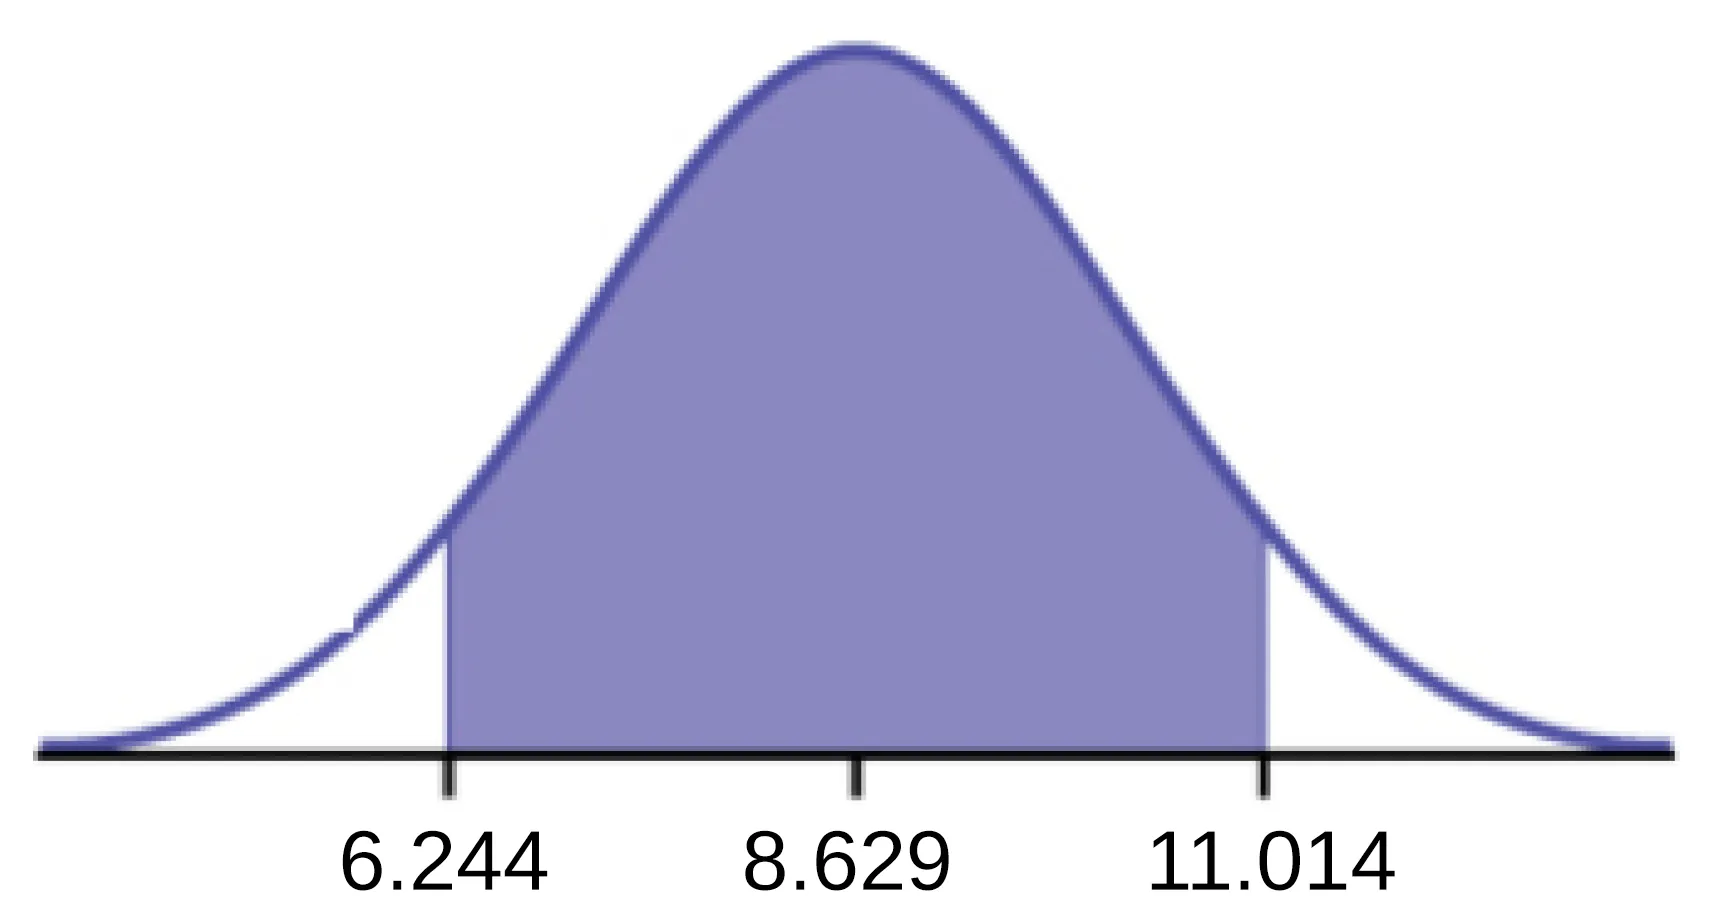 Se trata de una curva de distribución normal. El pico de la curva coincide con el punto 8629 del eje horizontal. Una región central está sombreada entre los puntos 6.244 y 11.014.